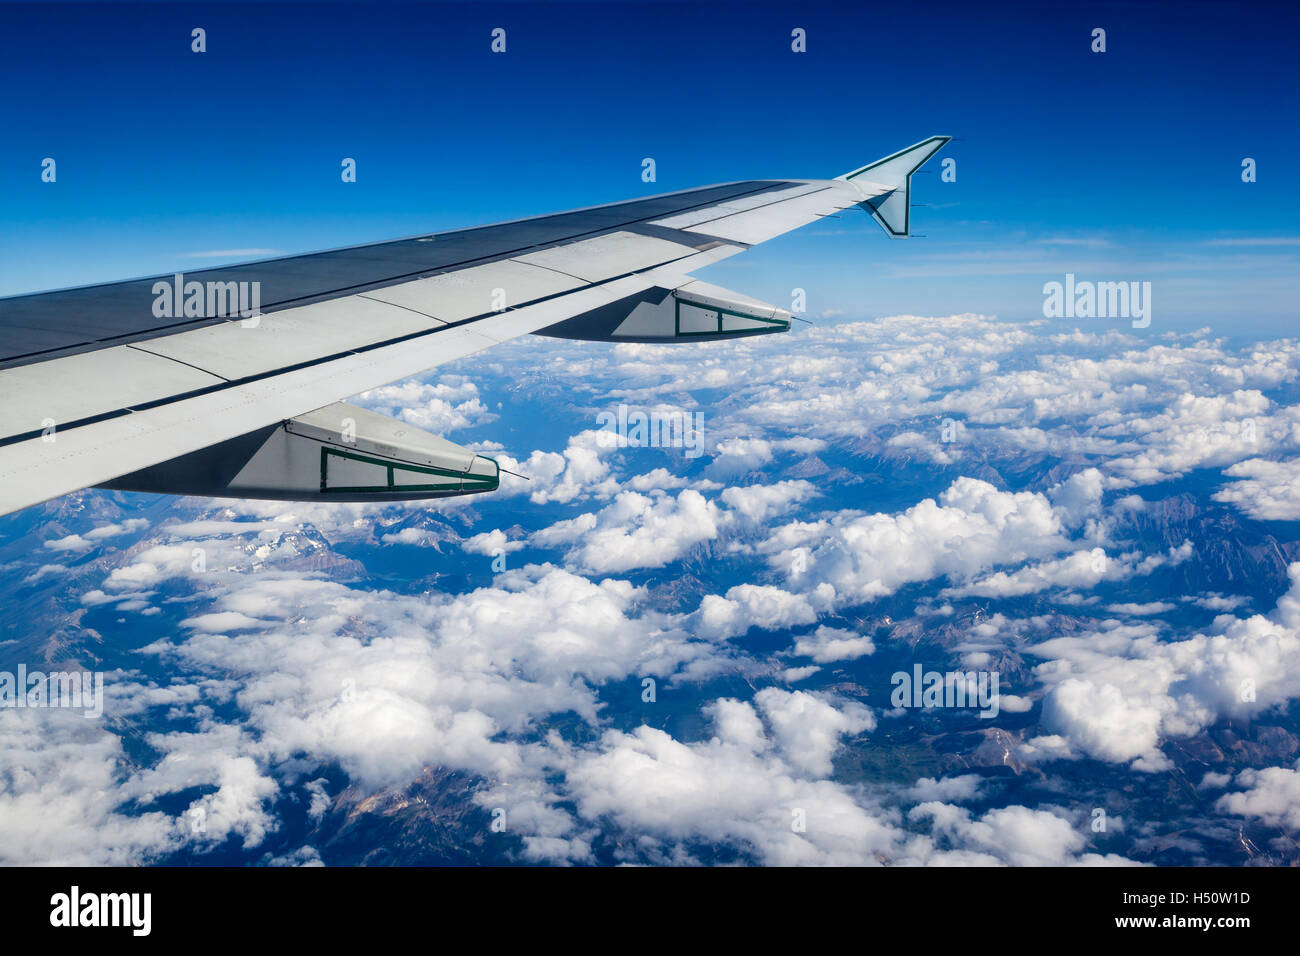 Vista de la ventana del avión mostrando ala de avión que volaba sobre las nubes y montañas rocosas. Foto de stock